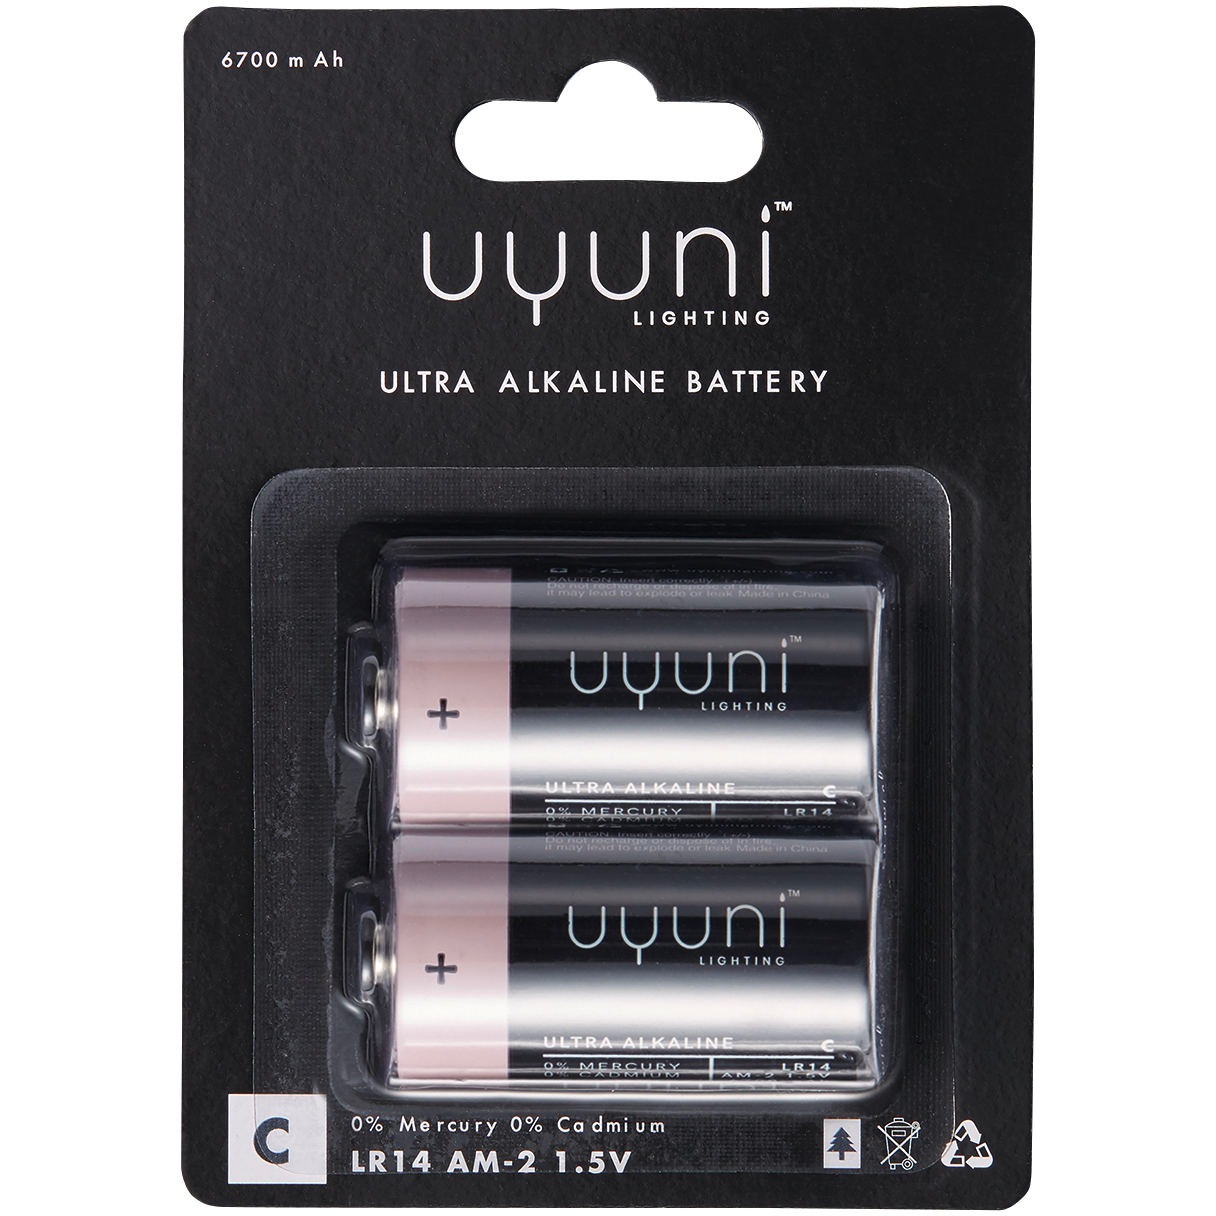 C Battery 1.5V 6700mAh, 2-pack